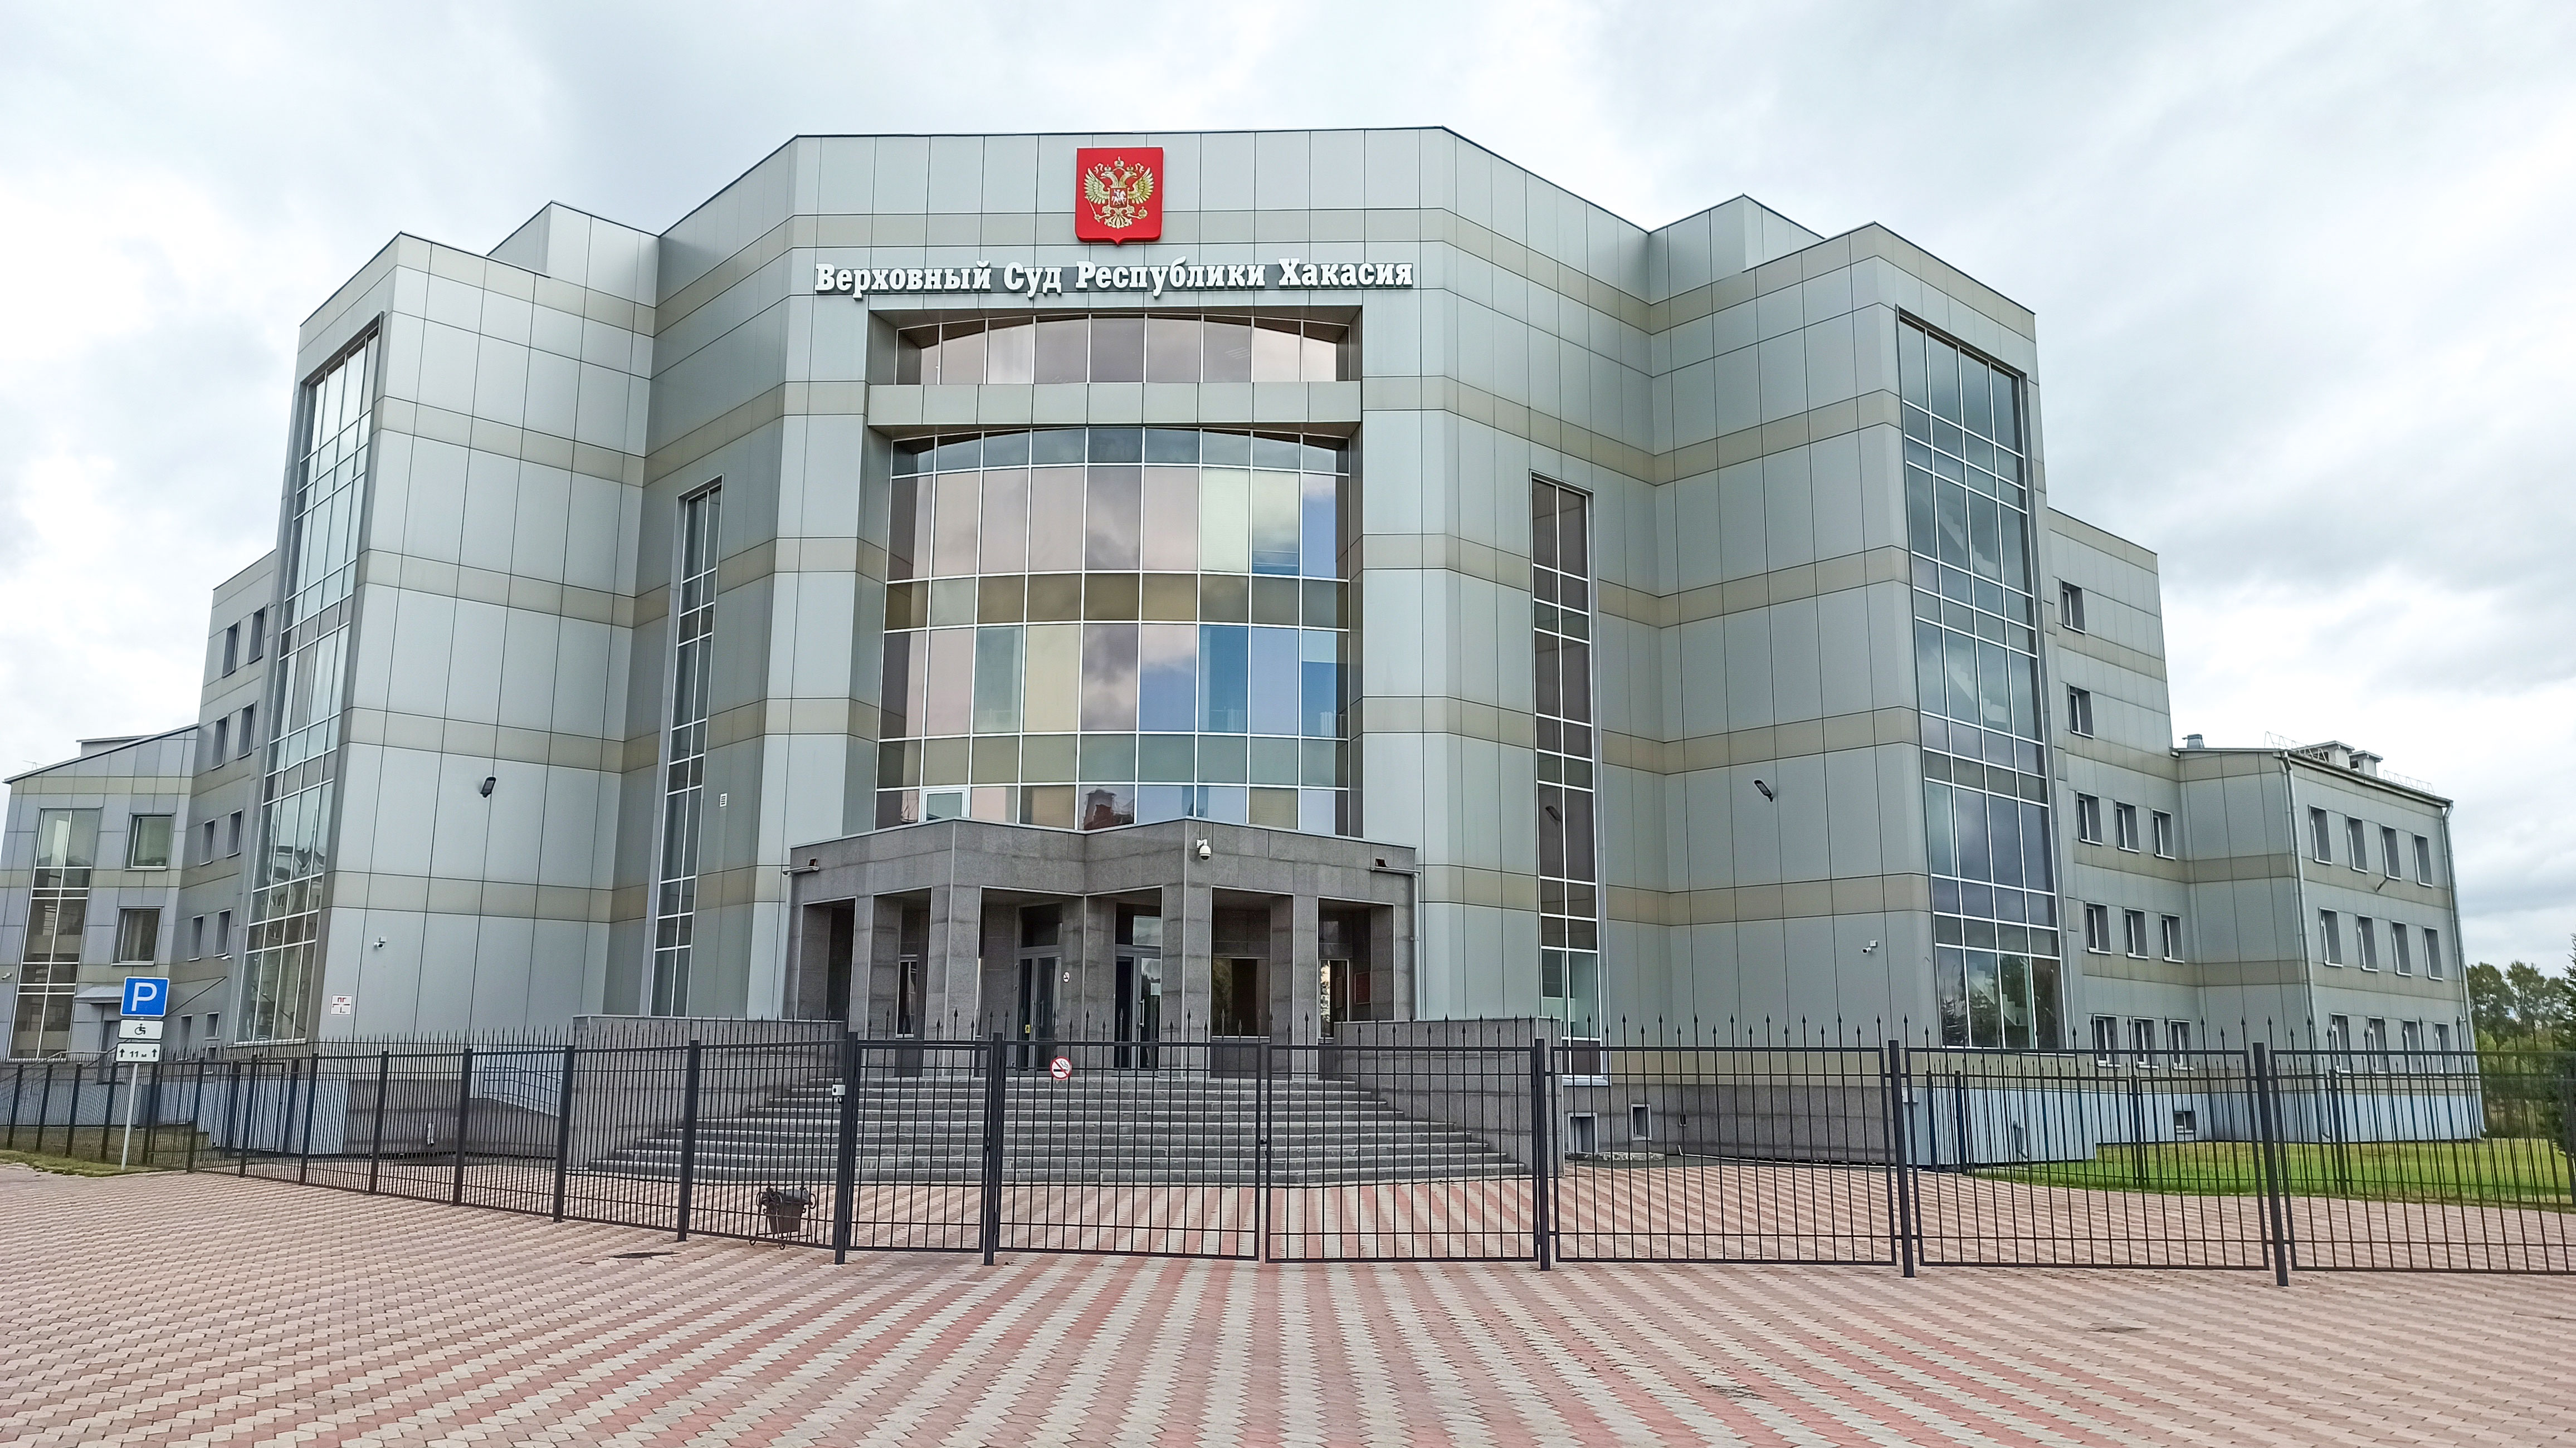 Верховный суд Республики Хакасия.